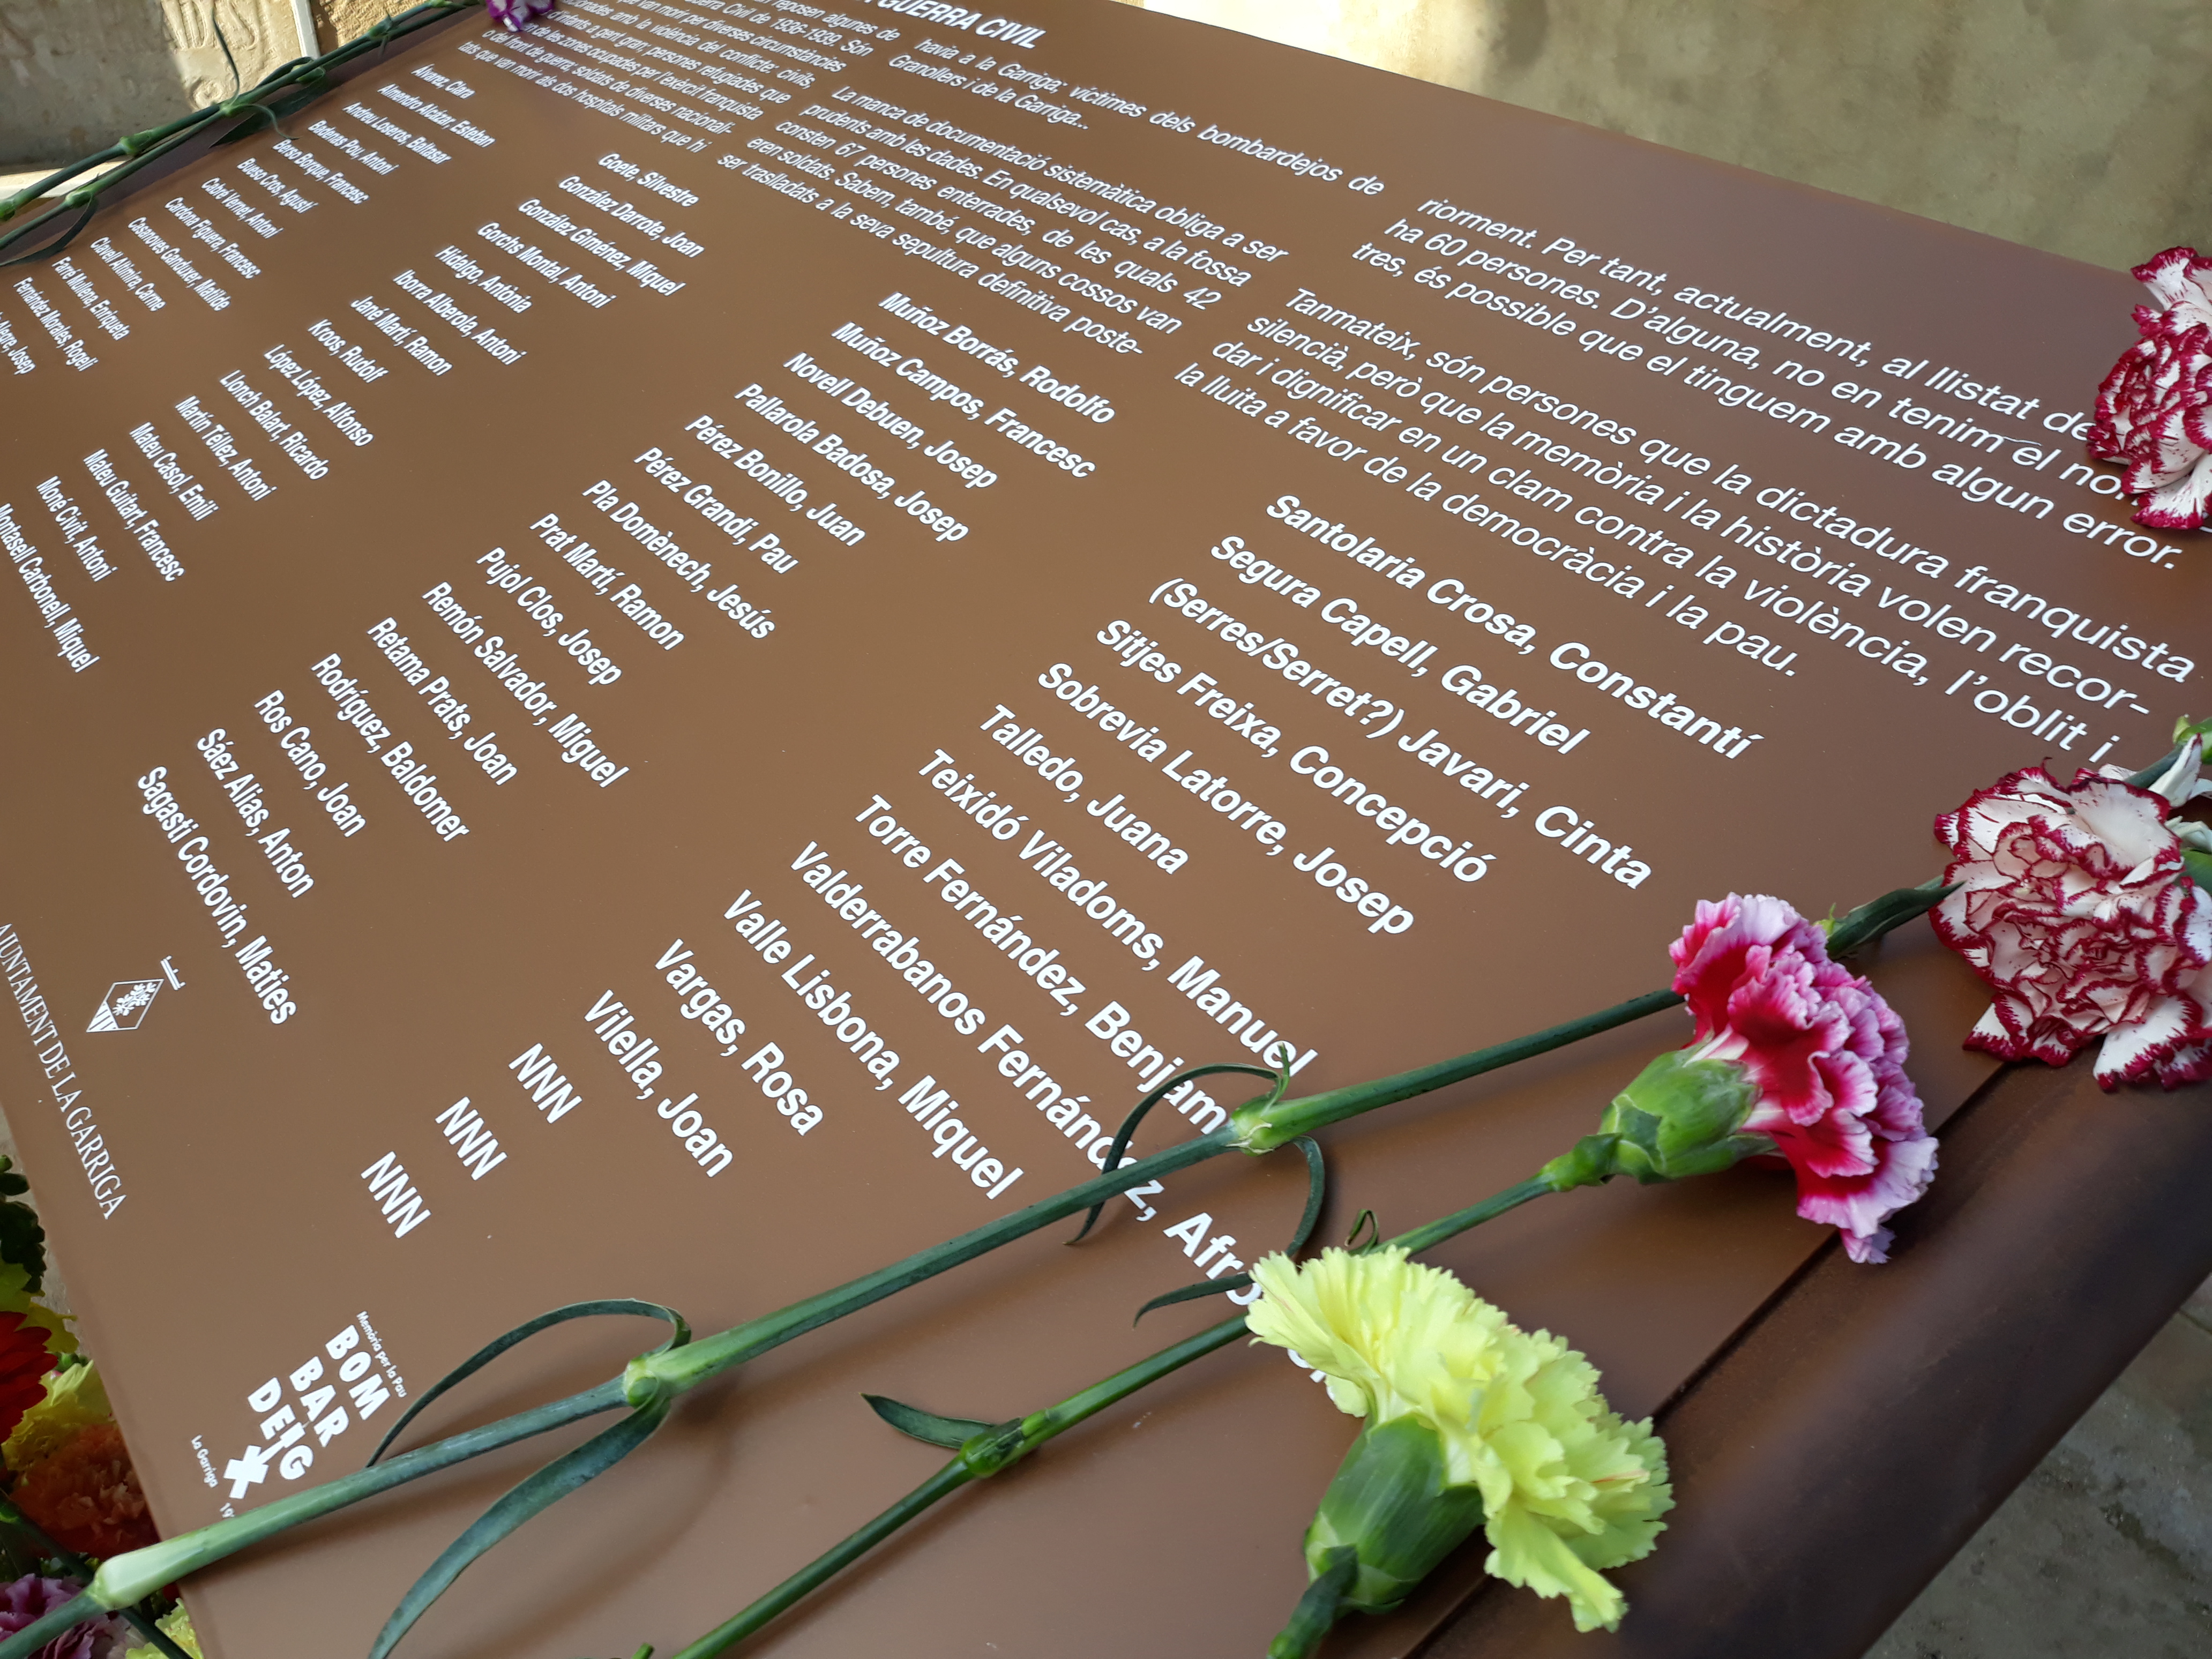 Acte institucional de record de les víctimes del bombardeig